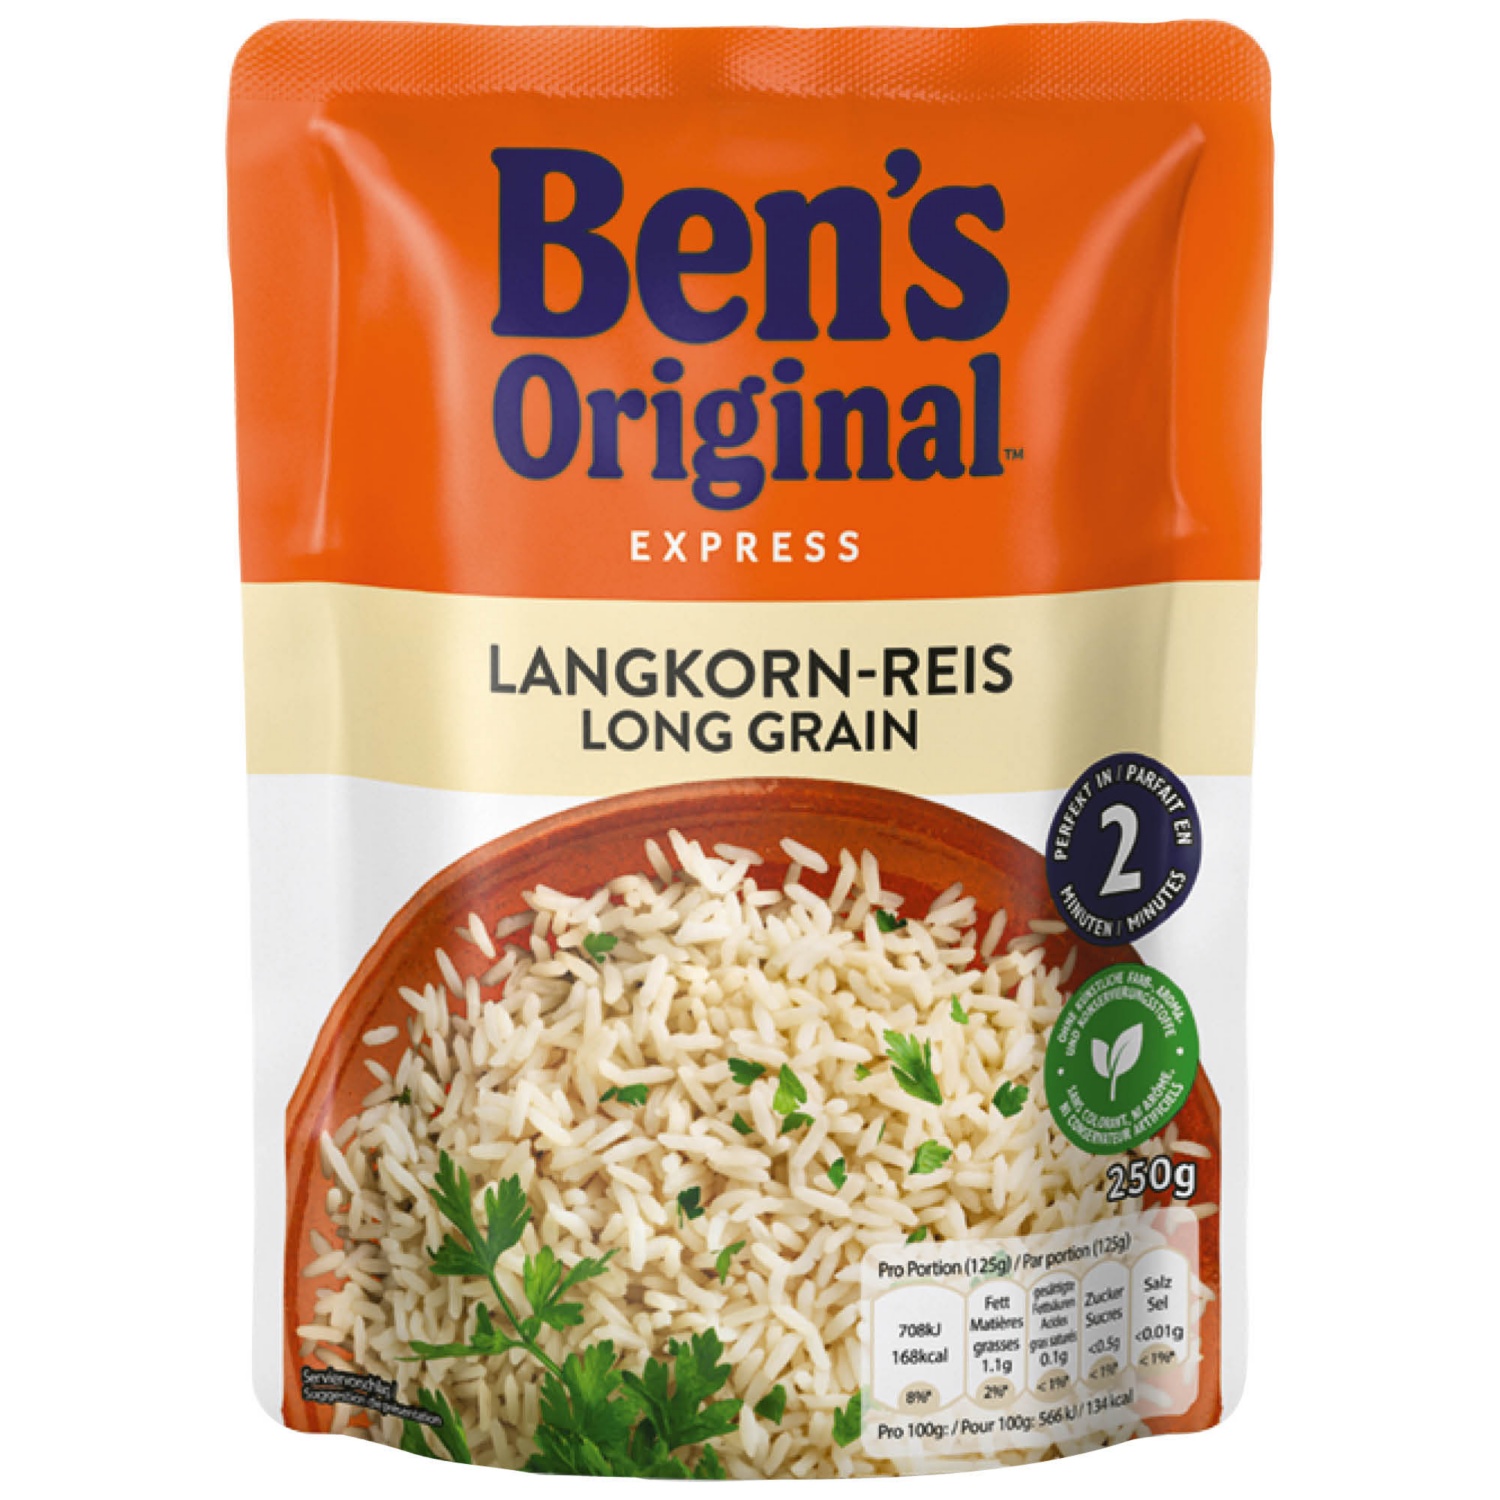 BEN'S ORIGINAL Bens express rice, Longgrain